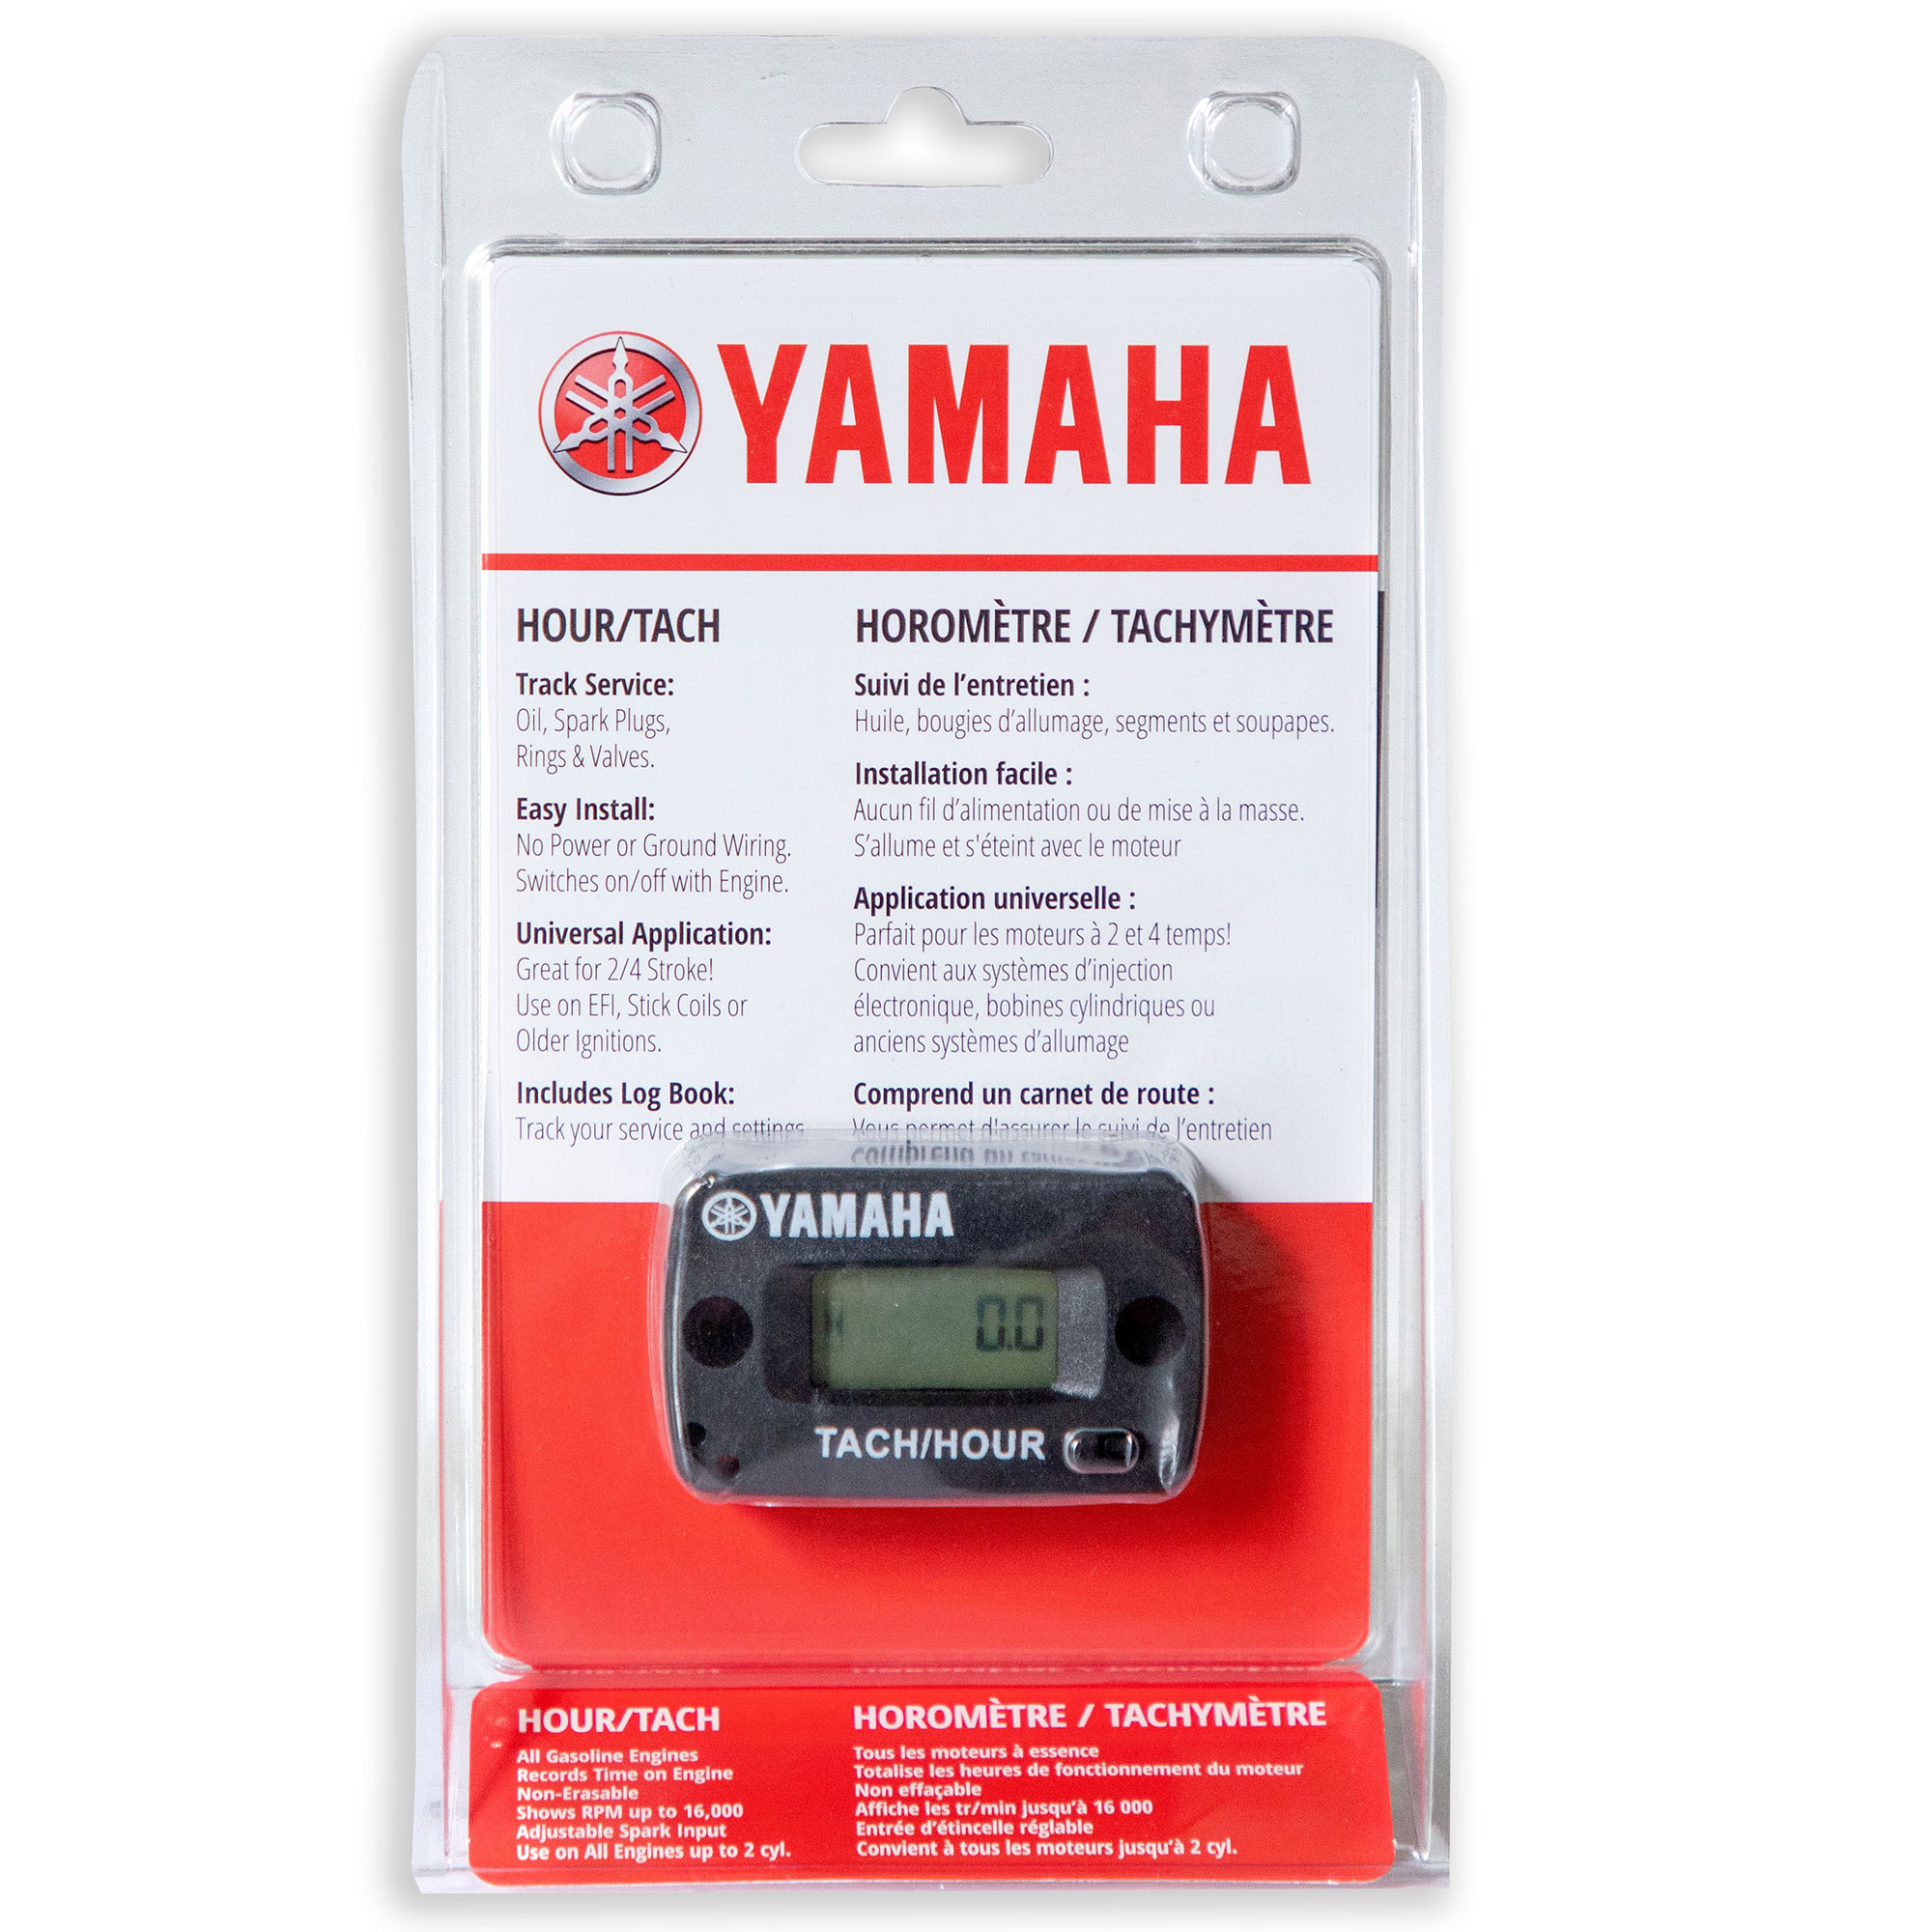 Pompe à essence électrique hors bord Yamaha F150, pas cher !